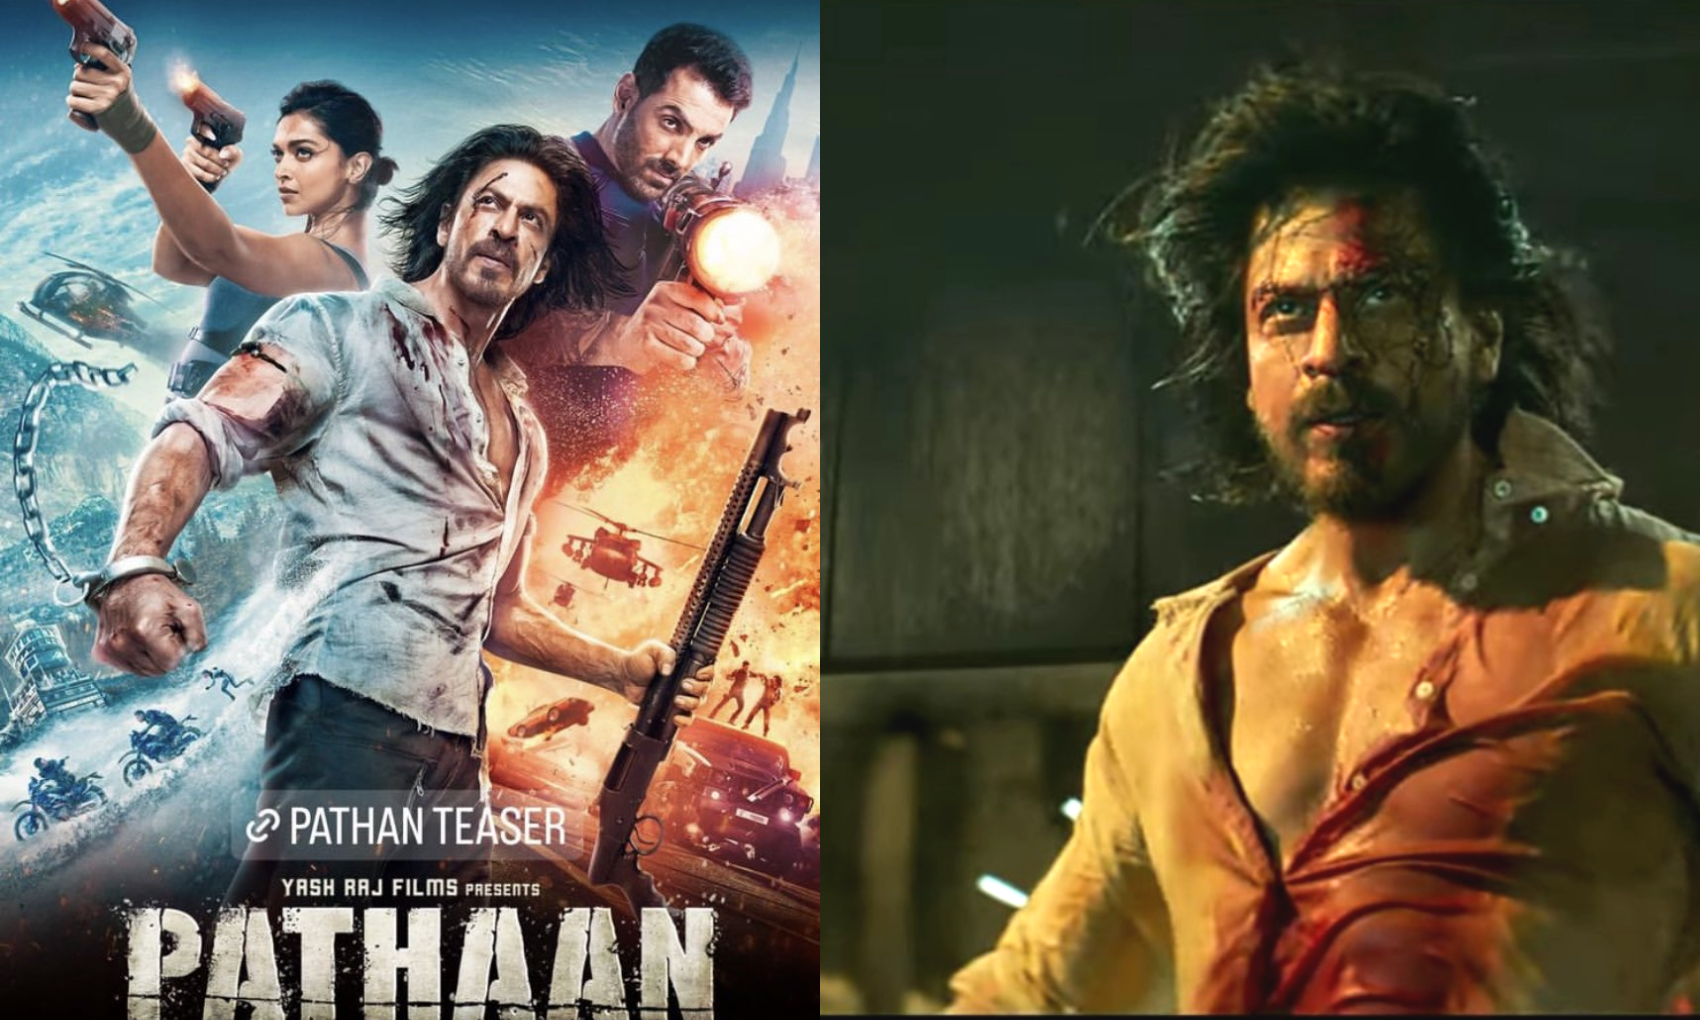 Pathan teaser: शाहरुख खान के जन्मदिन के मौके पर उनके फैंस को मिला सरप्राइज, ‘पठान’ का टीजर हुआ रिलीज!